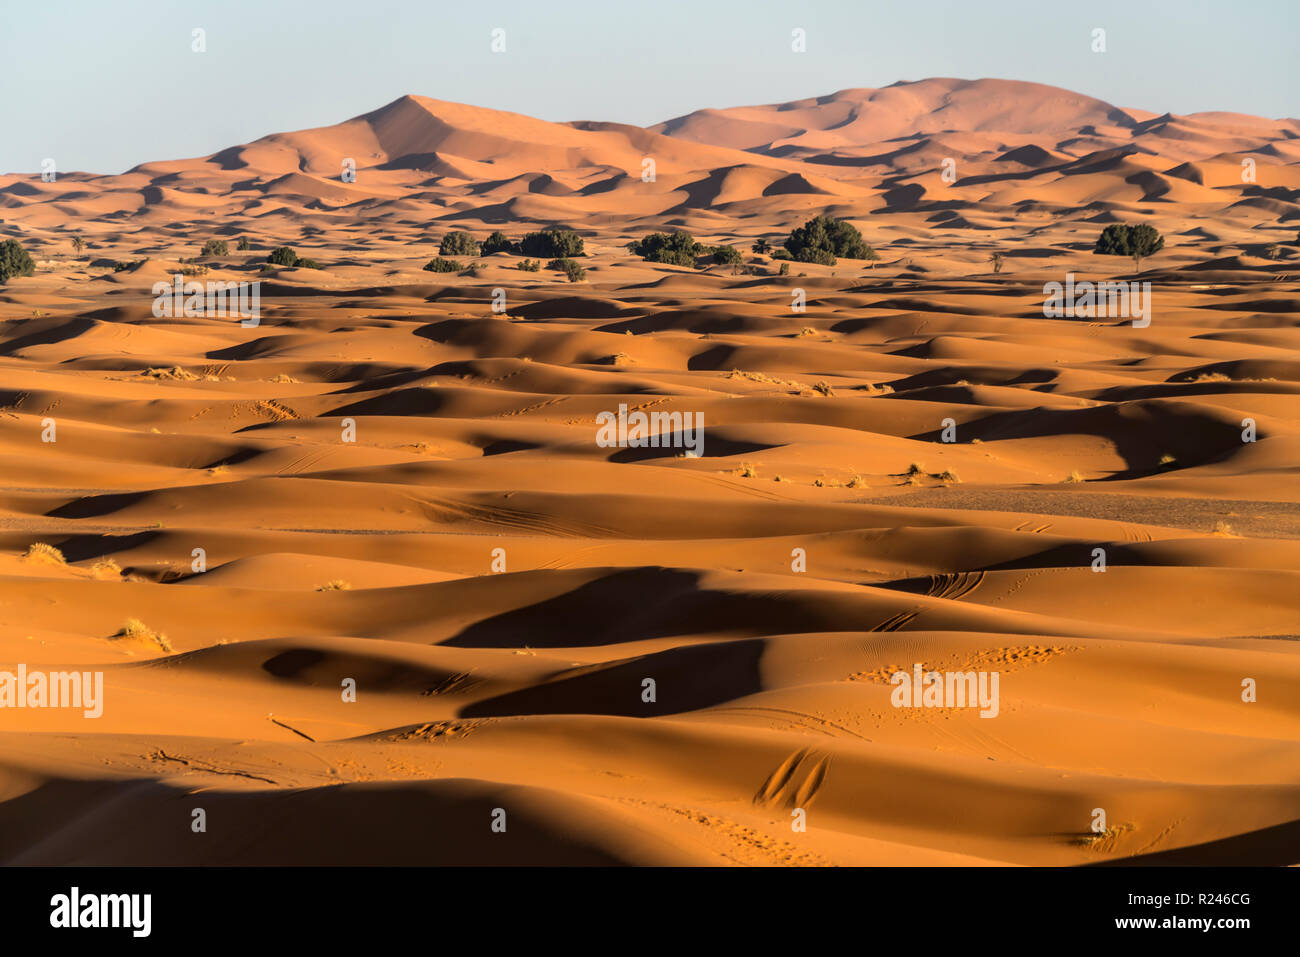 Sand dünen bei der Sahara Ancien Wüste, Merzouga, Maroc | dunes de sable dans le désert du Sahara, près de Merzouga, Royaume du Maroc, l'Afrique Banque D'Images